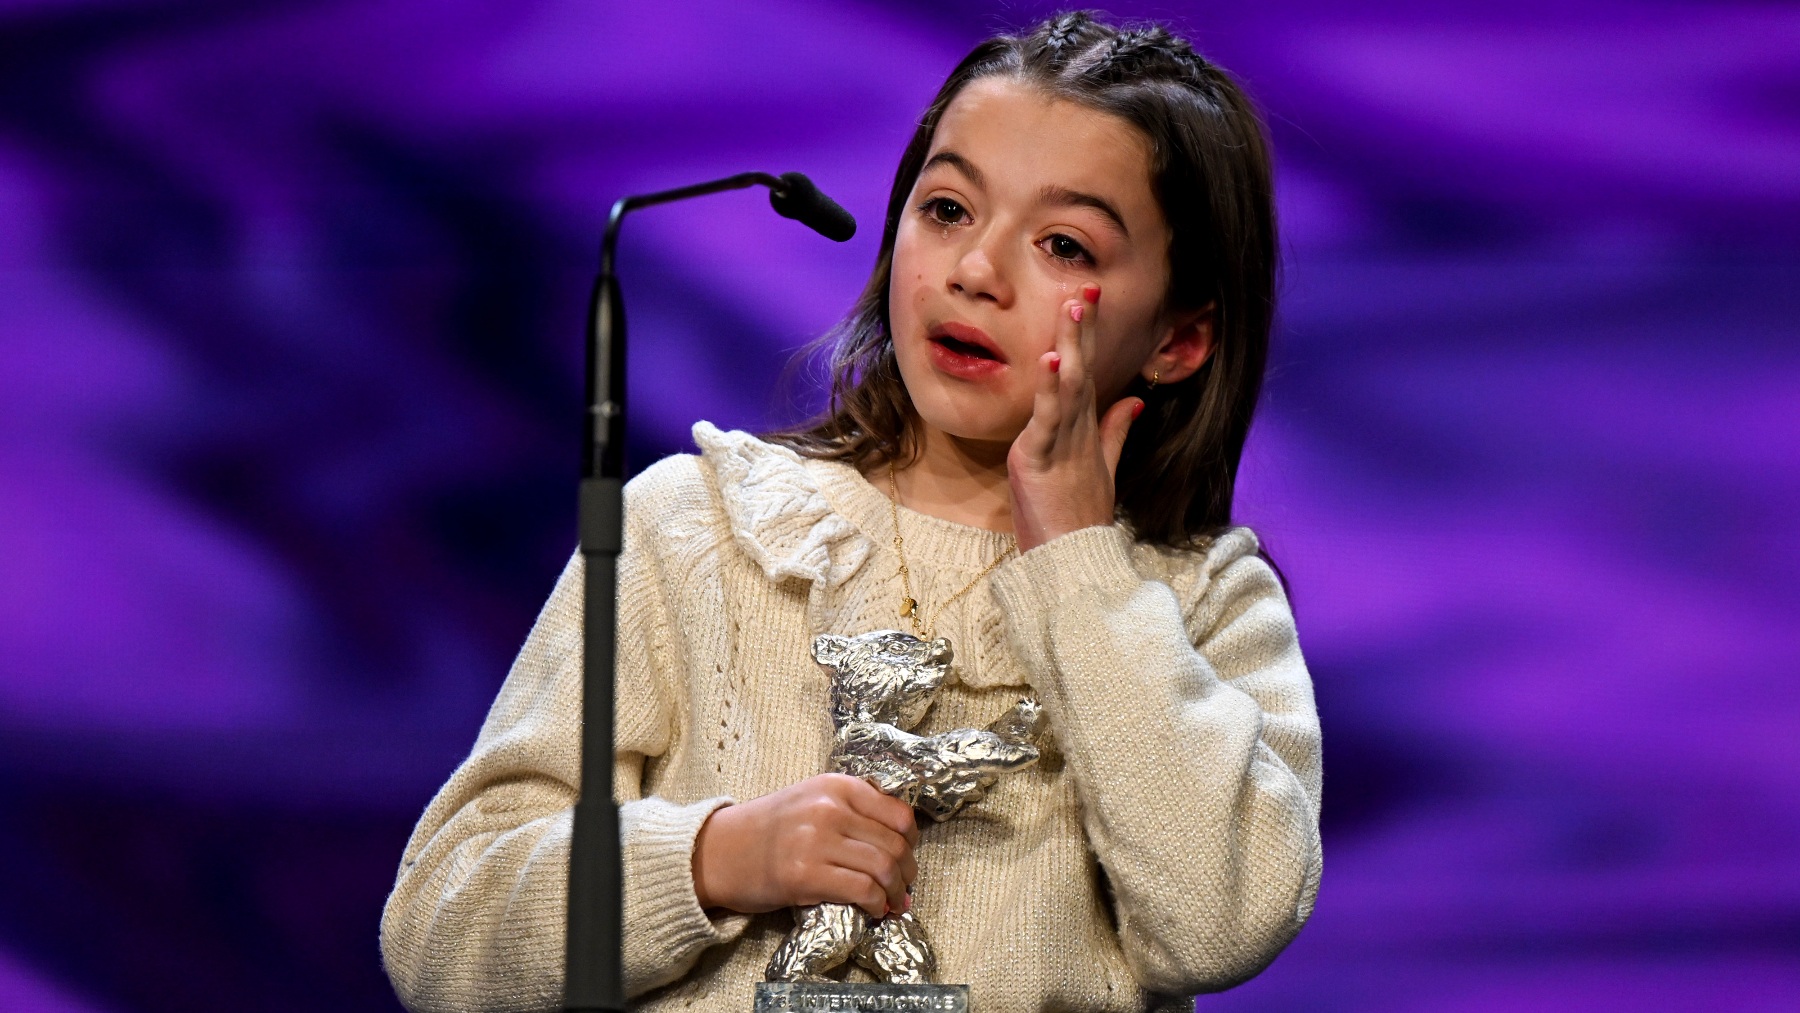 La española Sofía Otero, de ocho años, gana el Oso de Plata a la Mejor interpretación en la Berlinale